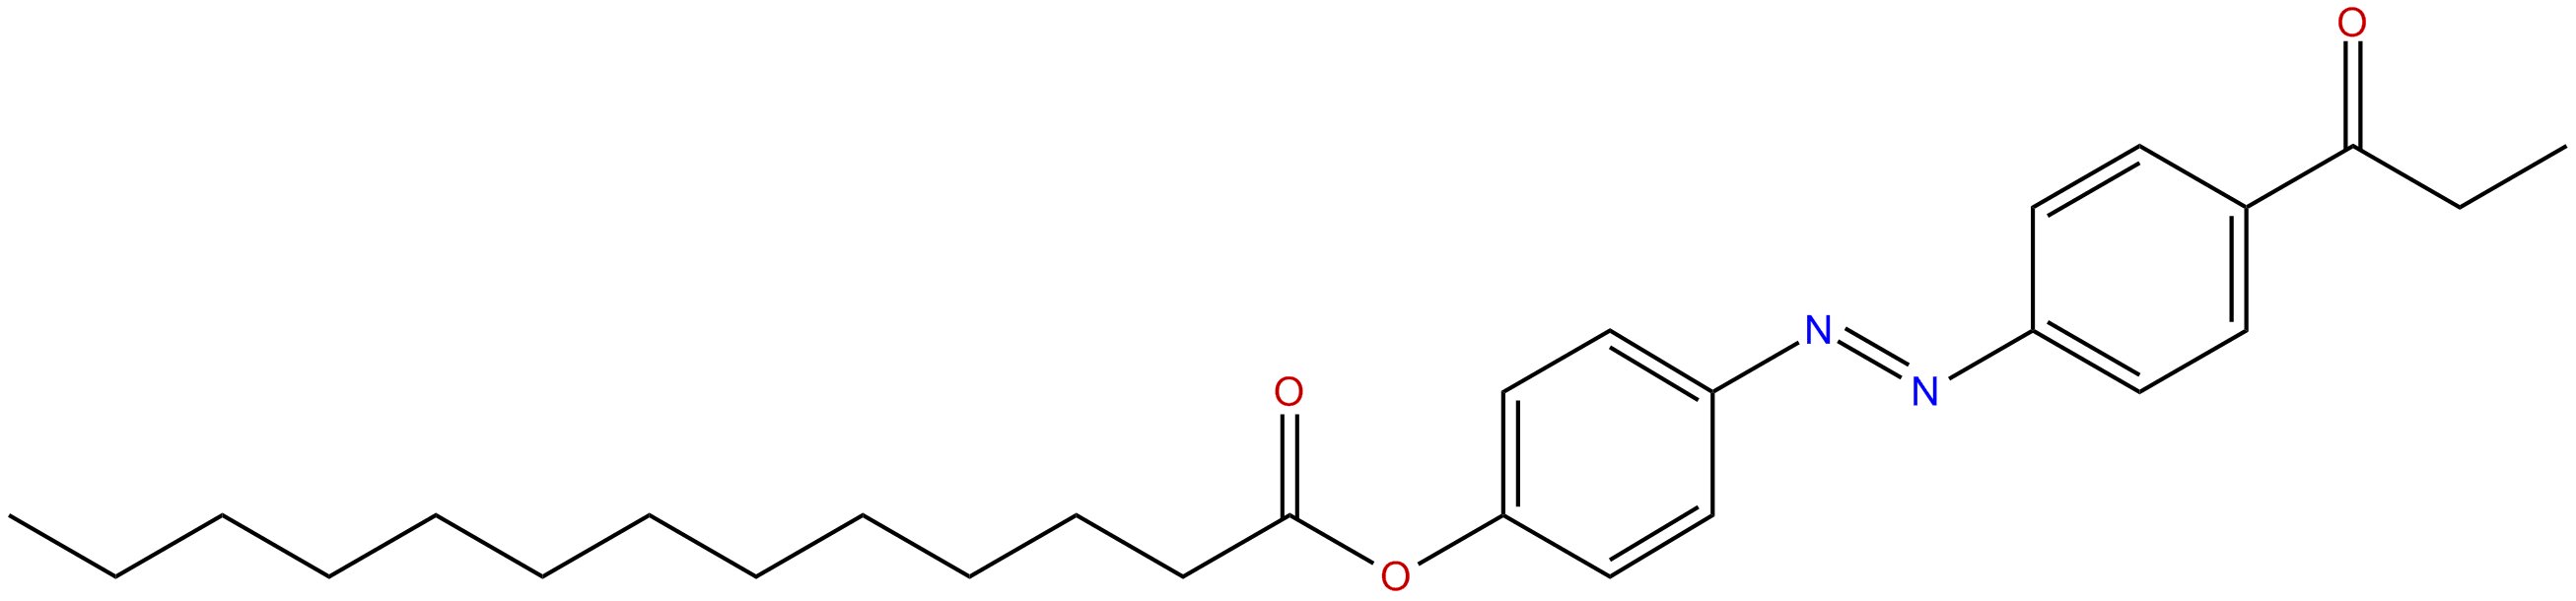 Image of 4-[[4-(1-oxopropyl)phenyl]azo]phenyl tridecanoate